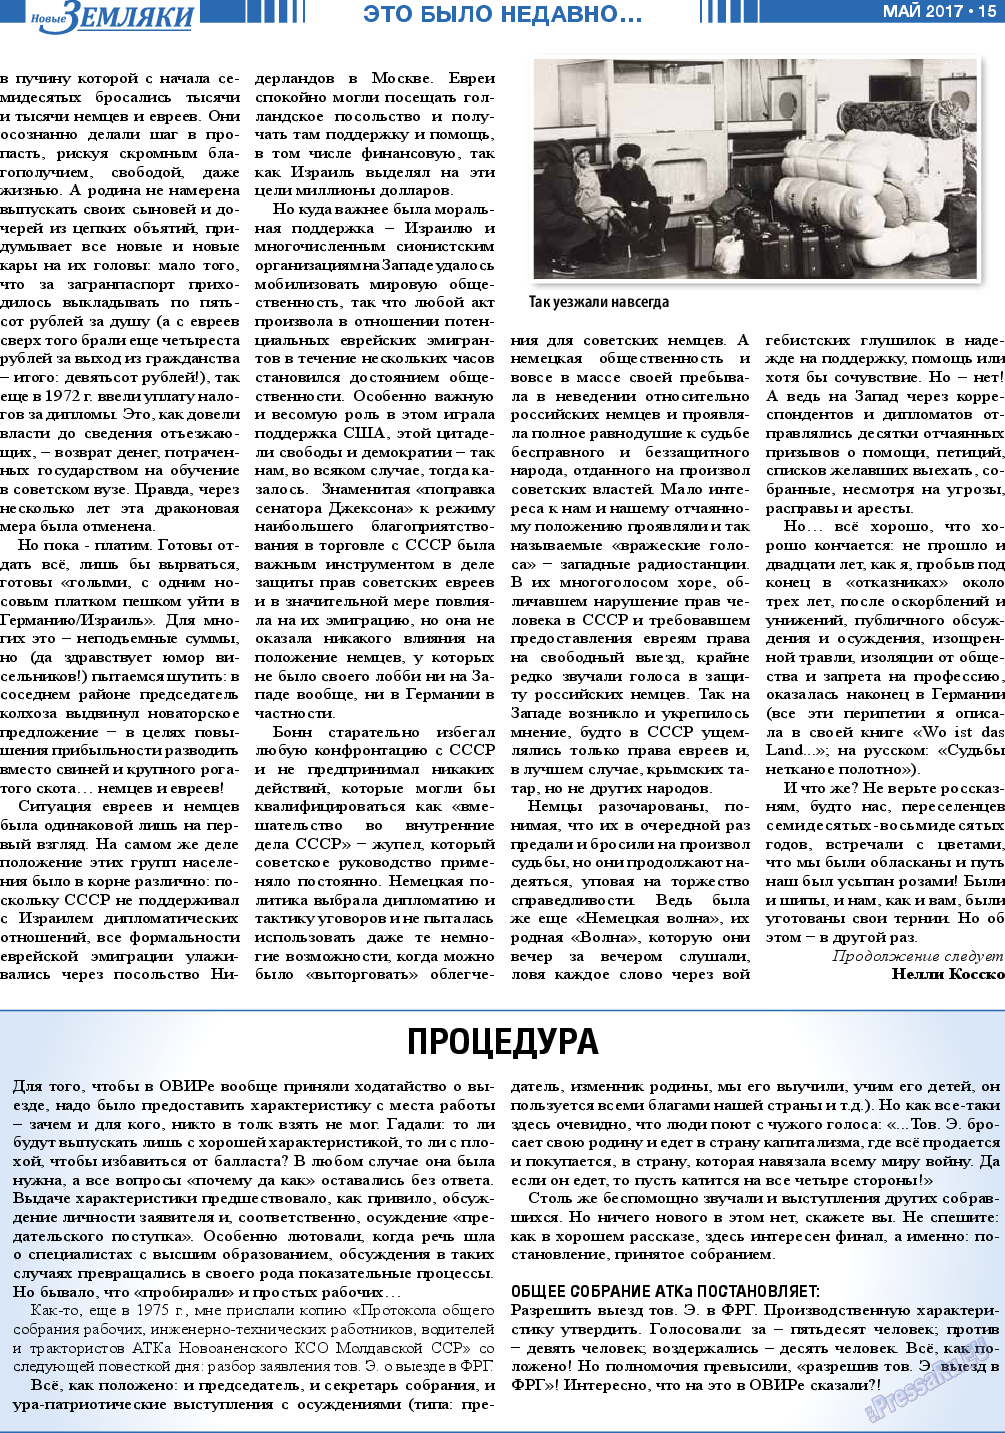 Новые Земляки, газета. 2017 №5 стр.15